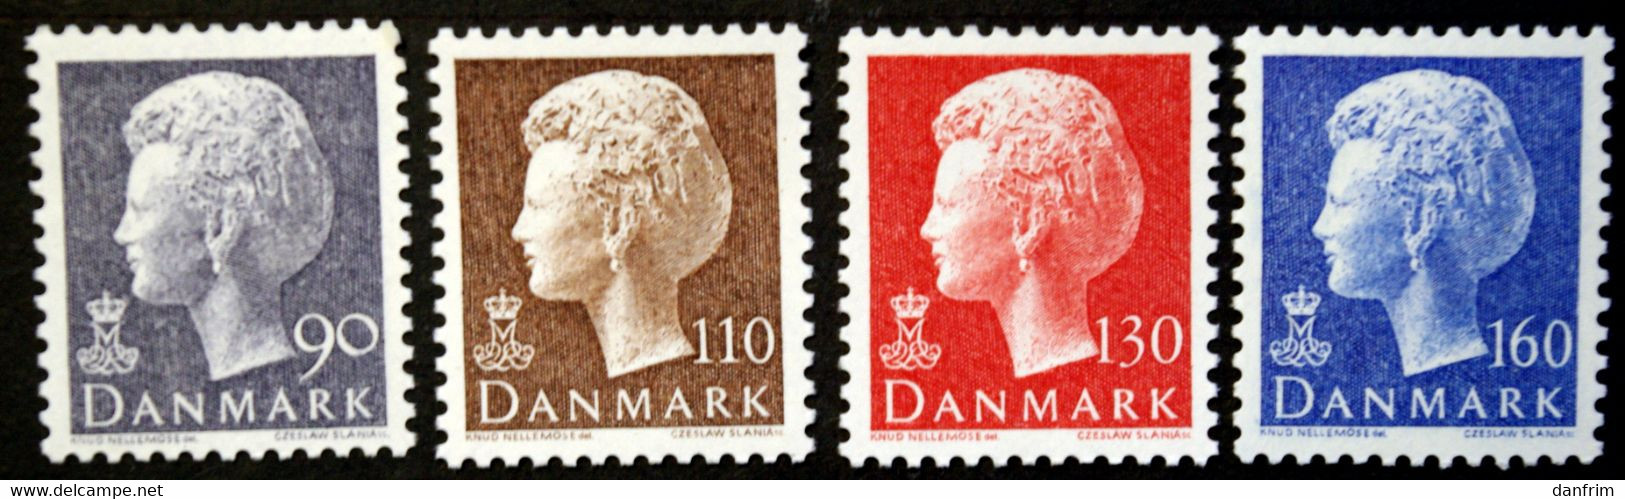 Denmark 1979   Queen Margrethe II  MiNr.680-83  MNH (**)  ( Lot  A 287) - Neufs